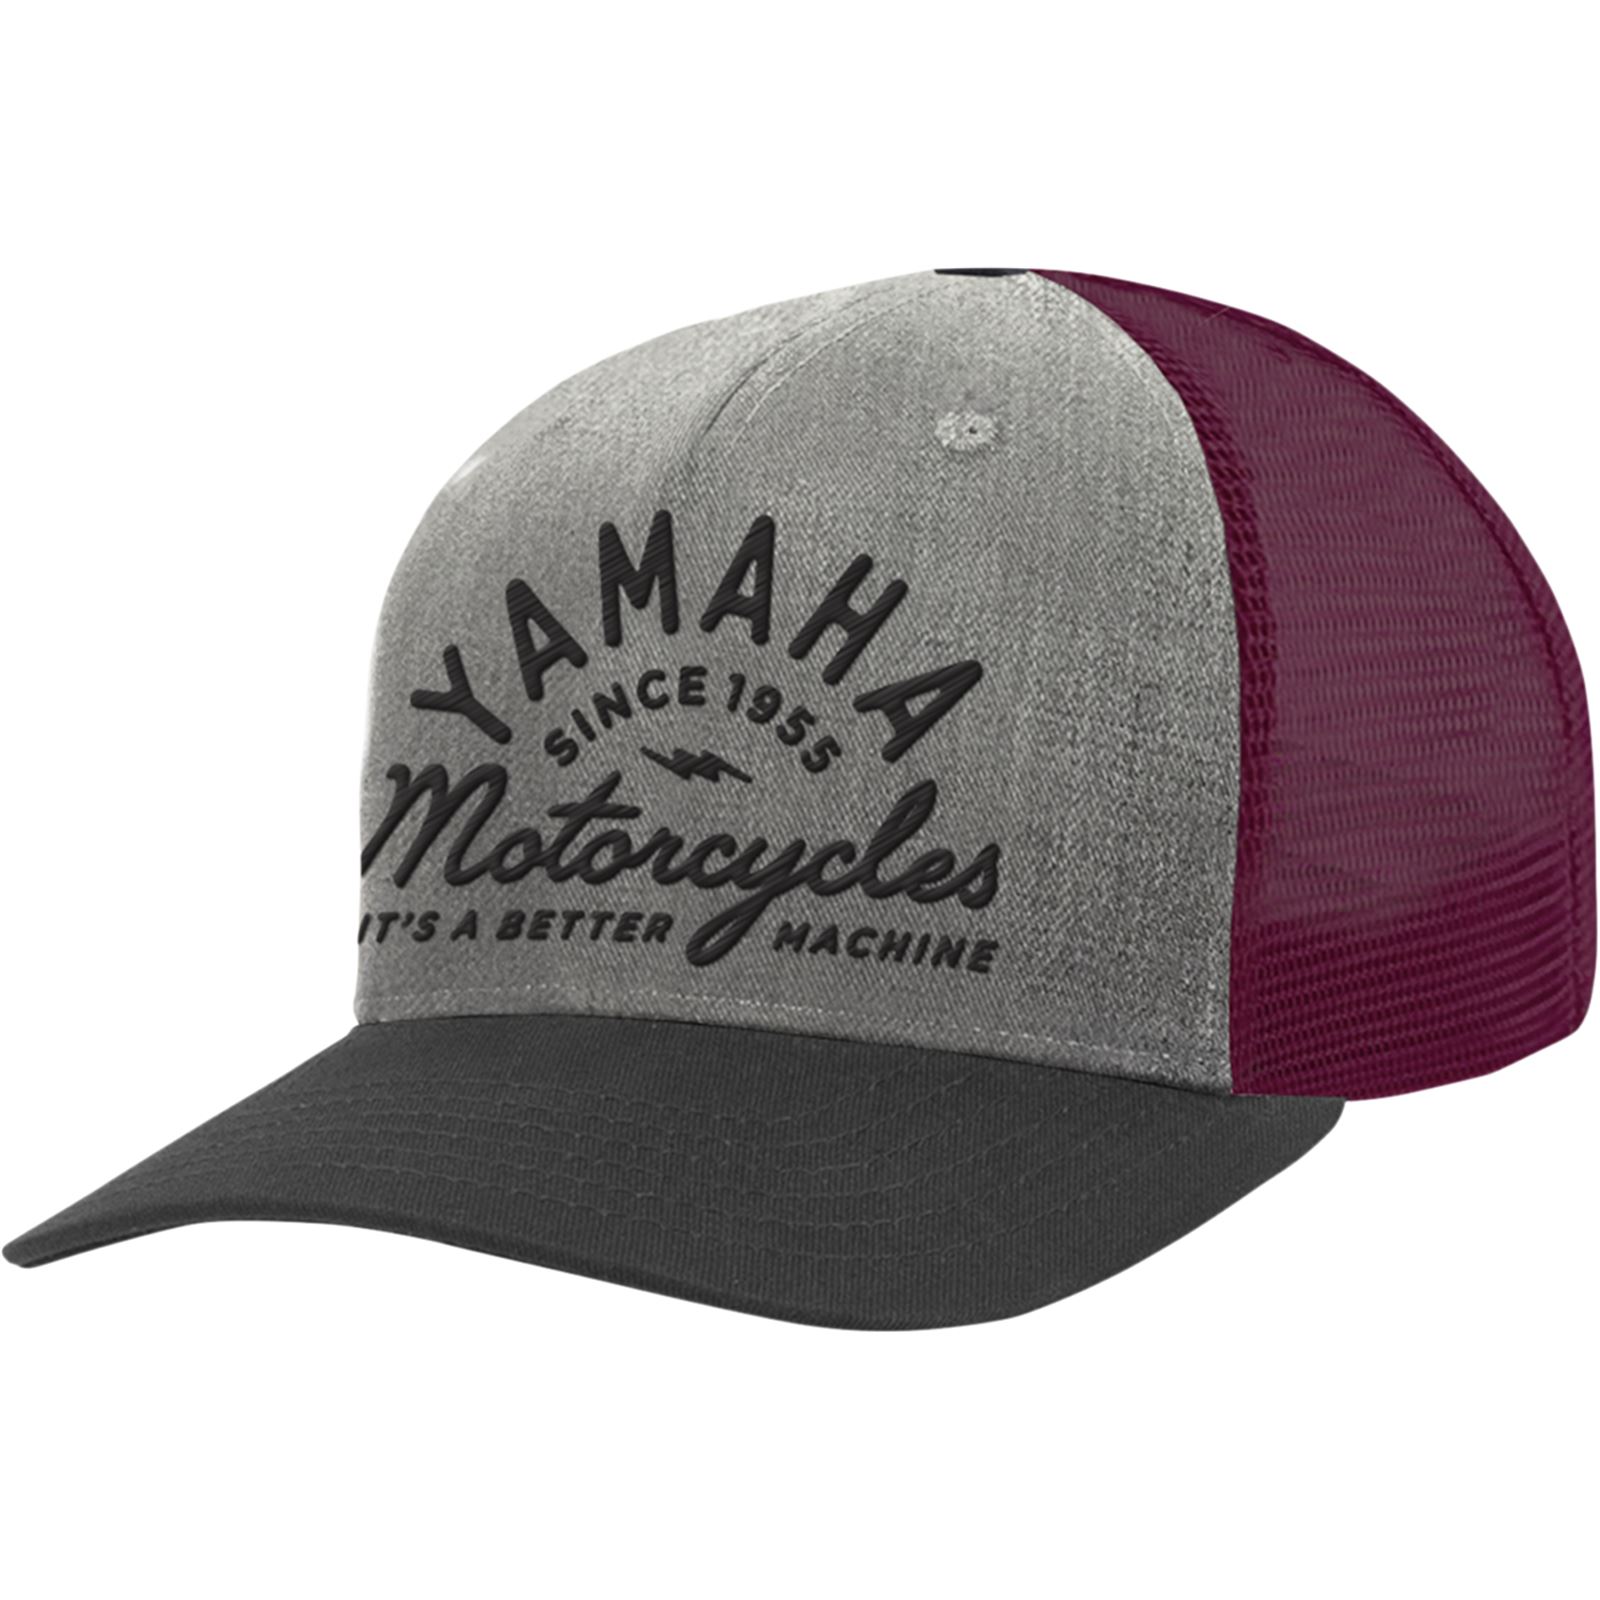 Yamaha Wool Hat - Gray/Maroon